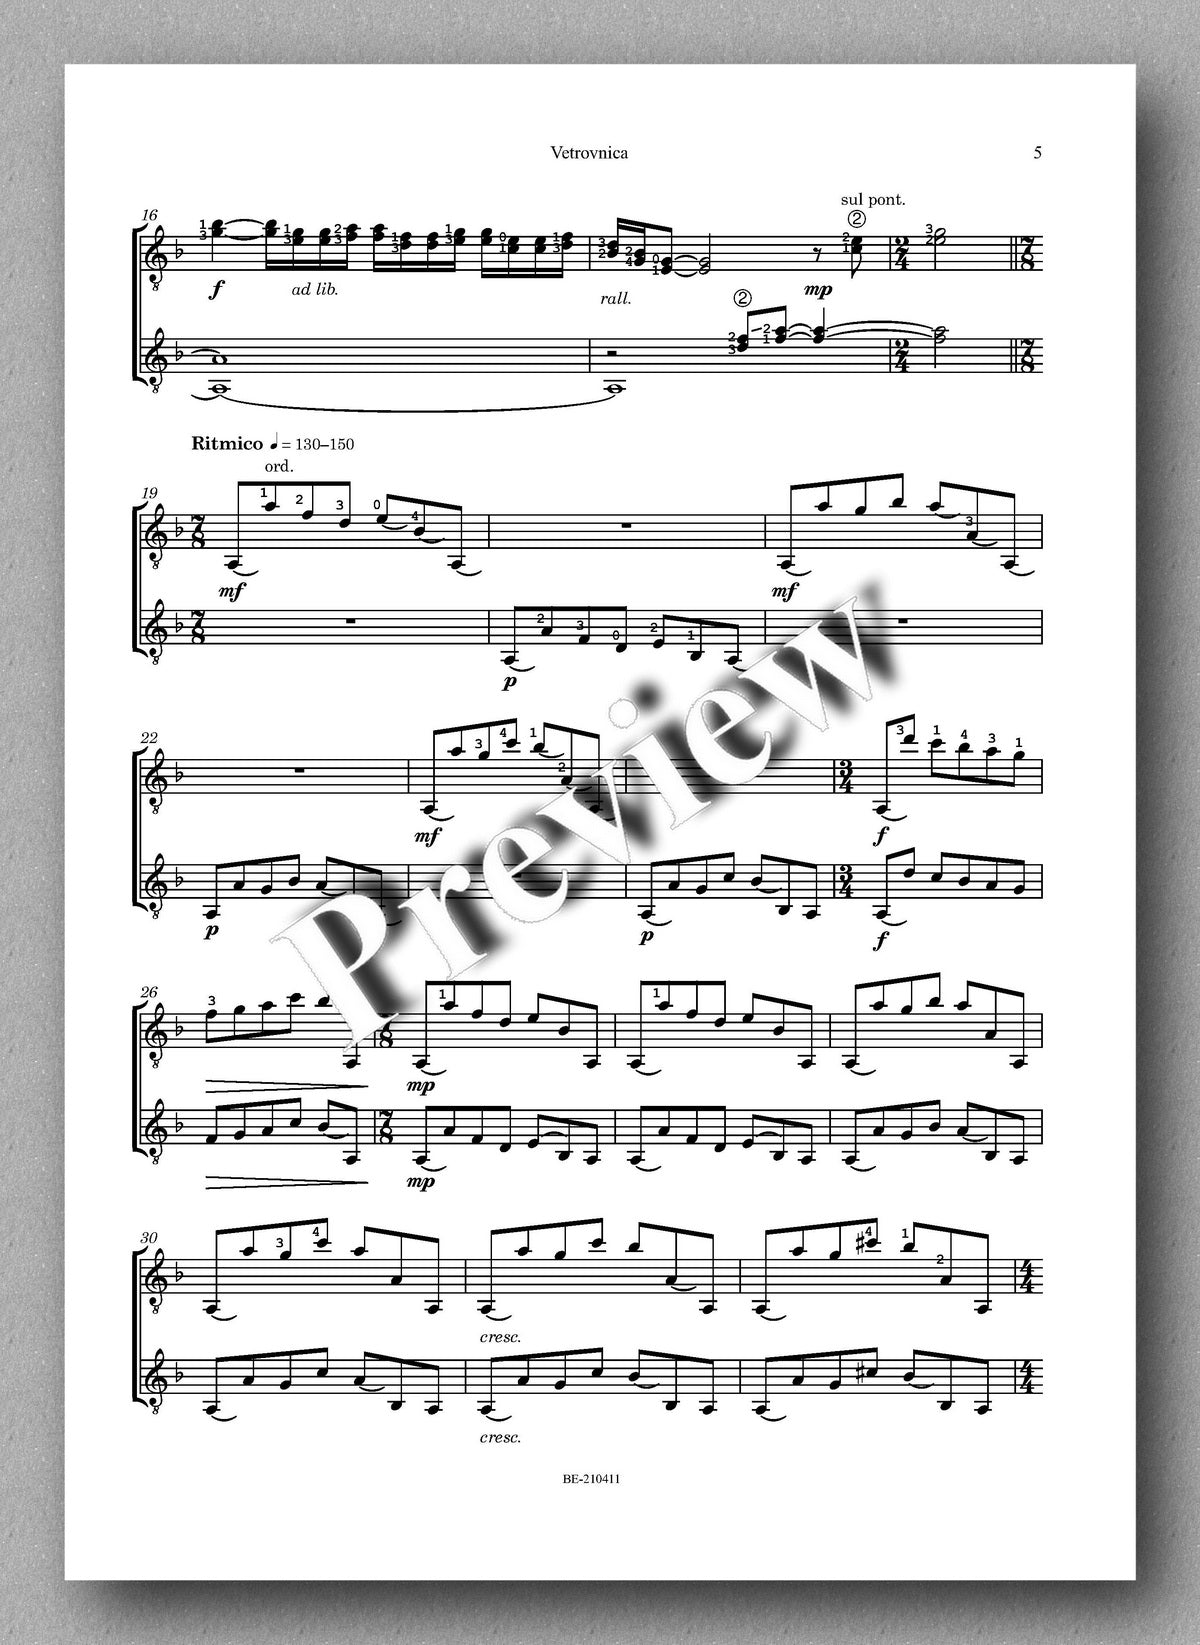 Plohl, Vetrovnica - music score 2